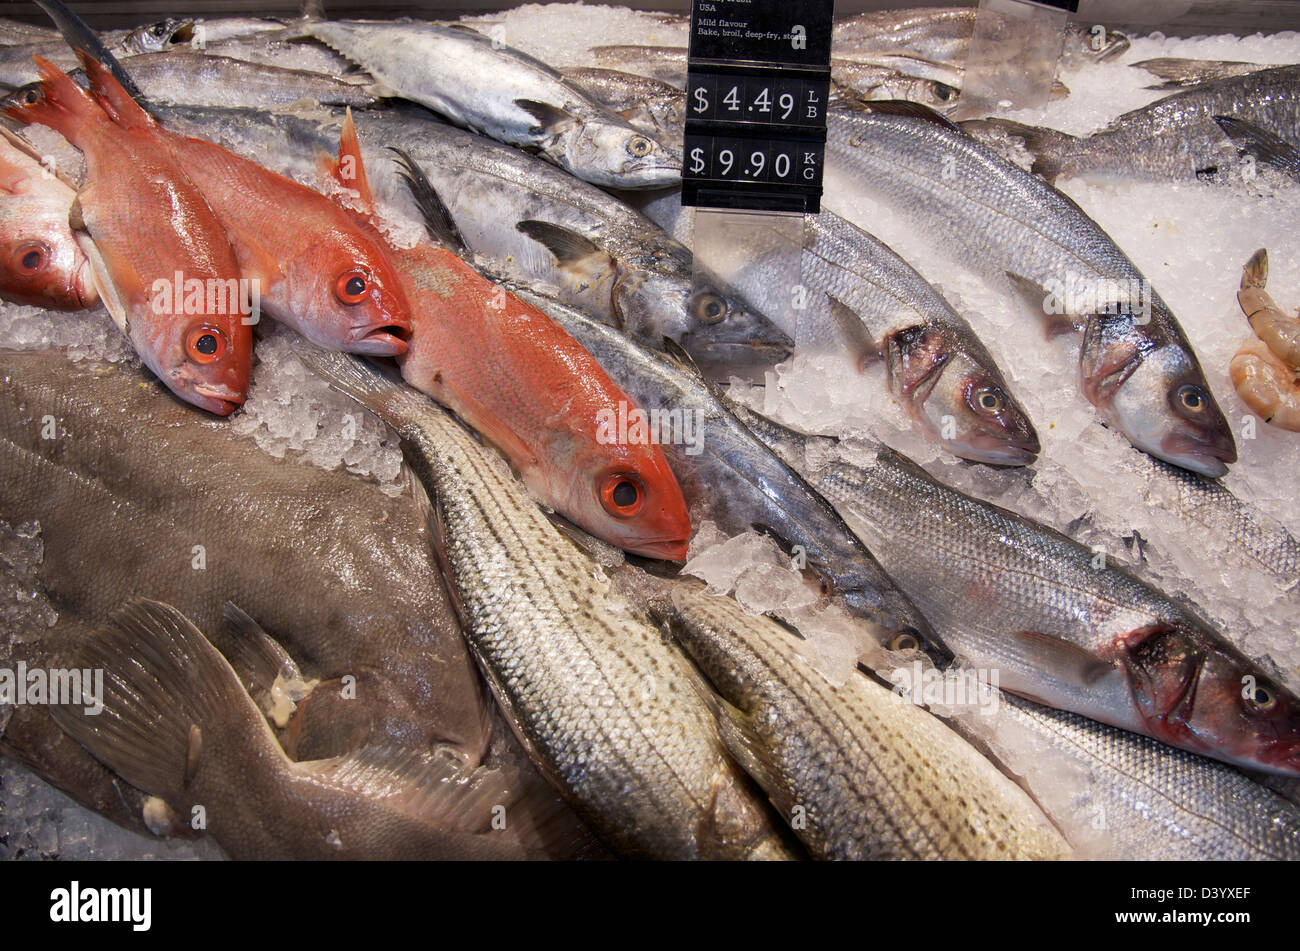 Vielzahl von Frischfisch auf Eis, St. Lawrence Market, Toronto, Ontario, Kanada Stockfoto